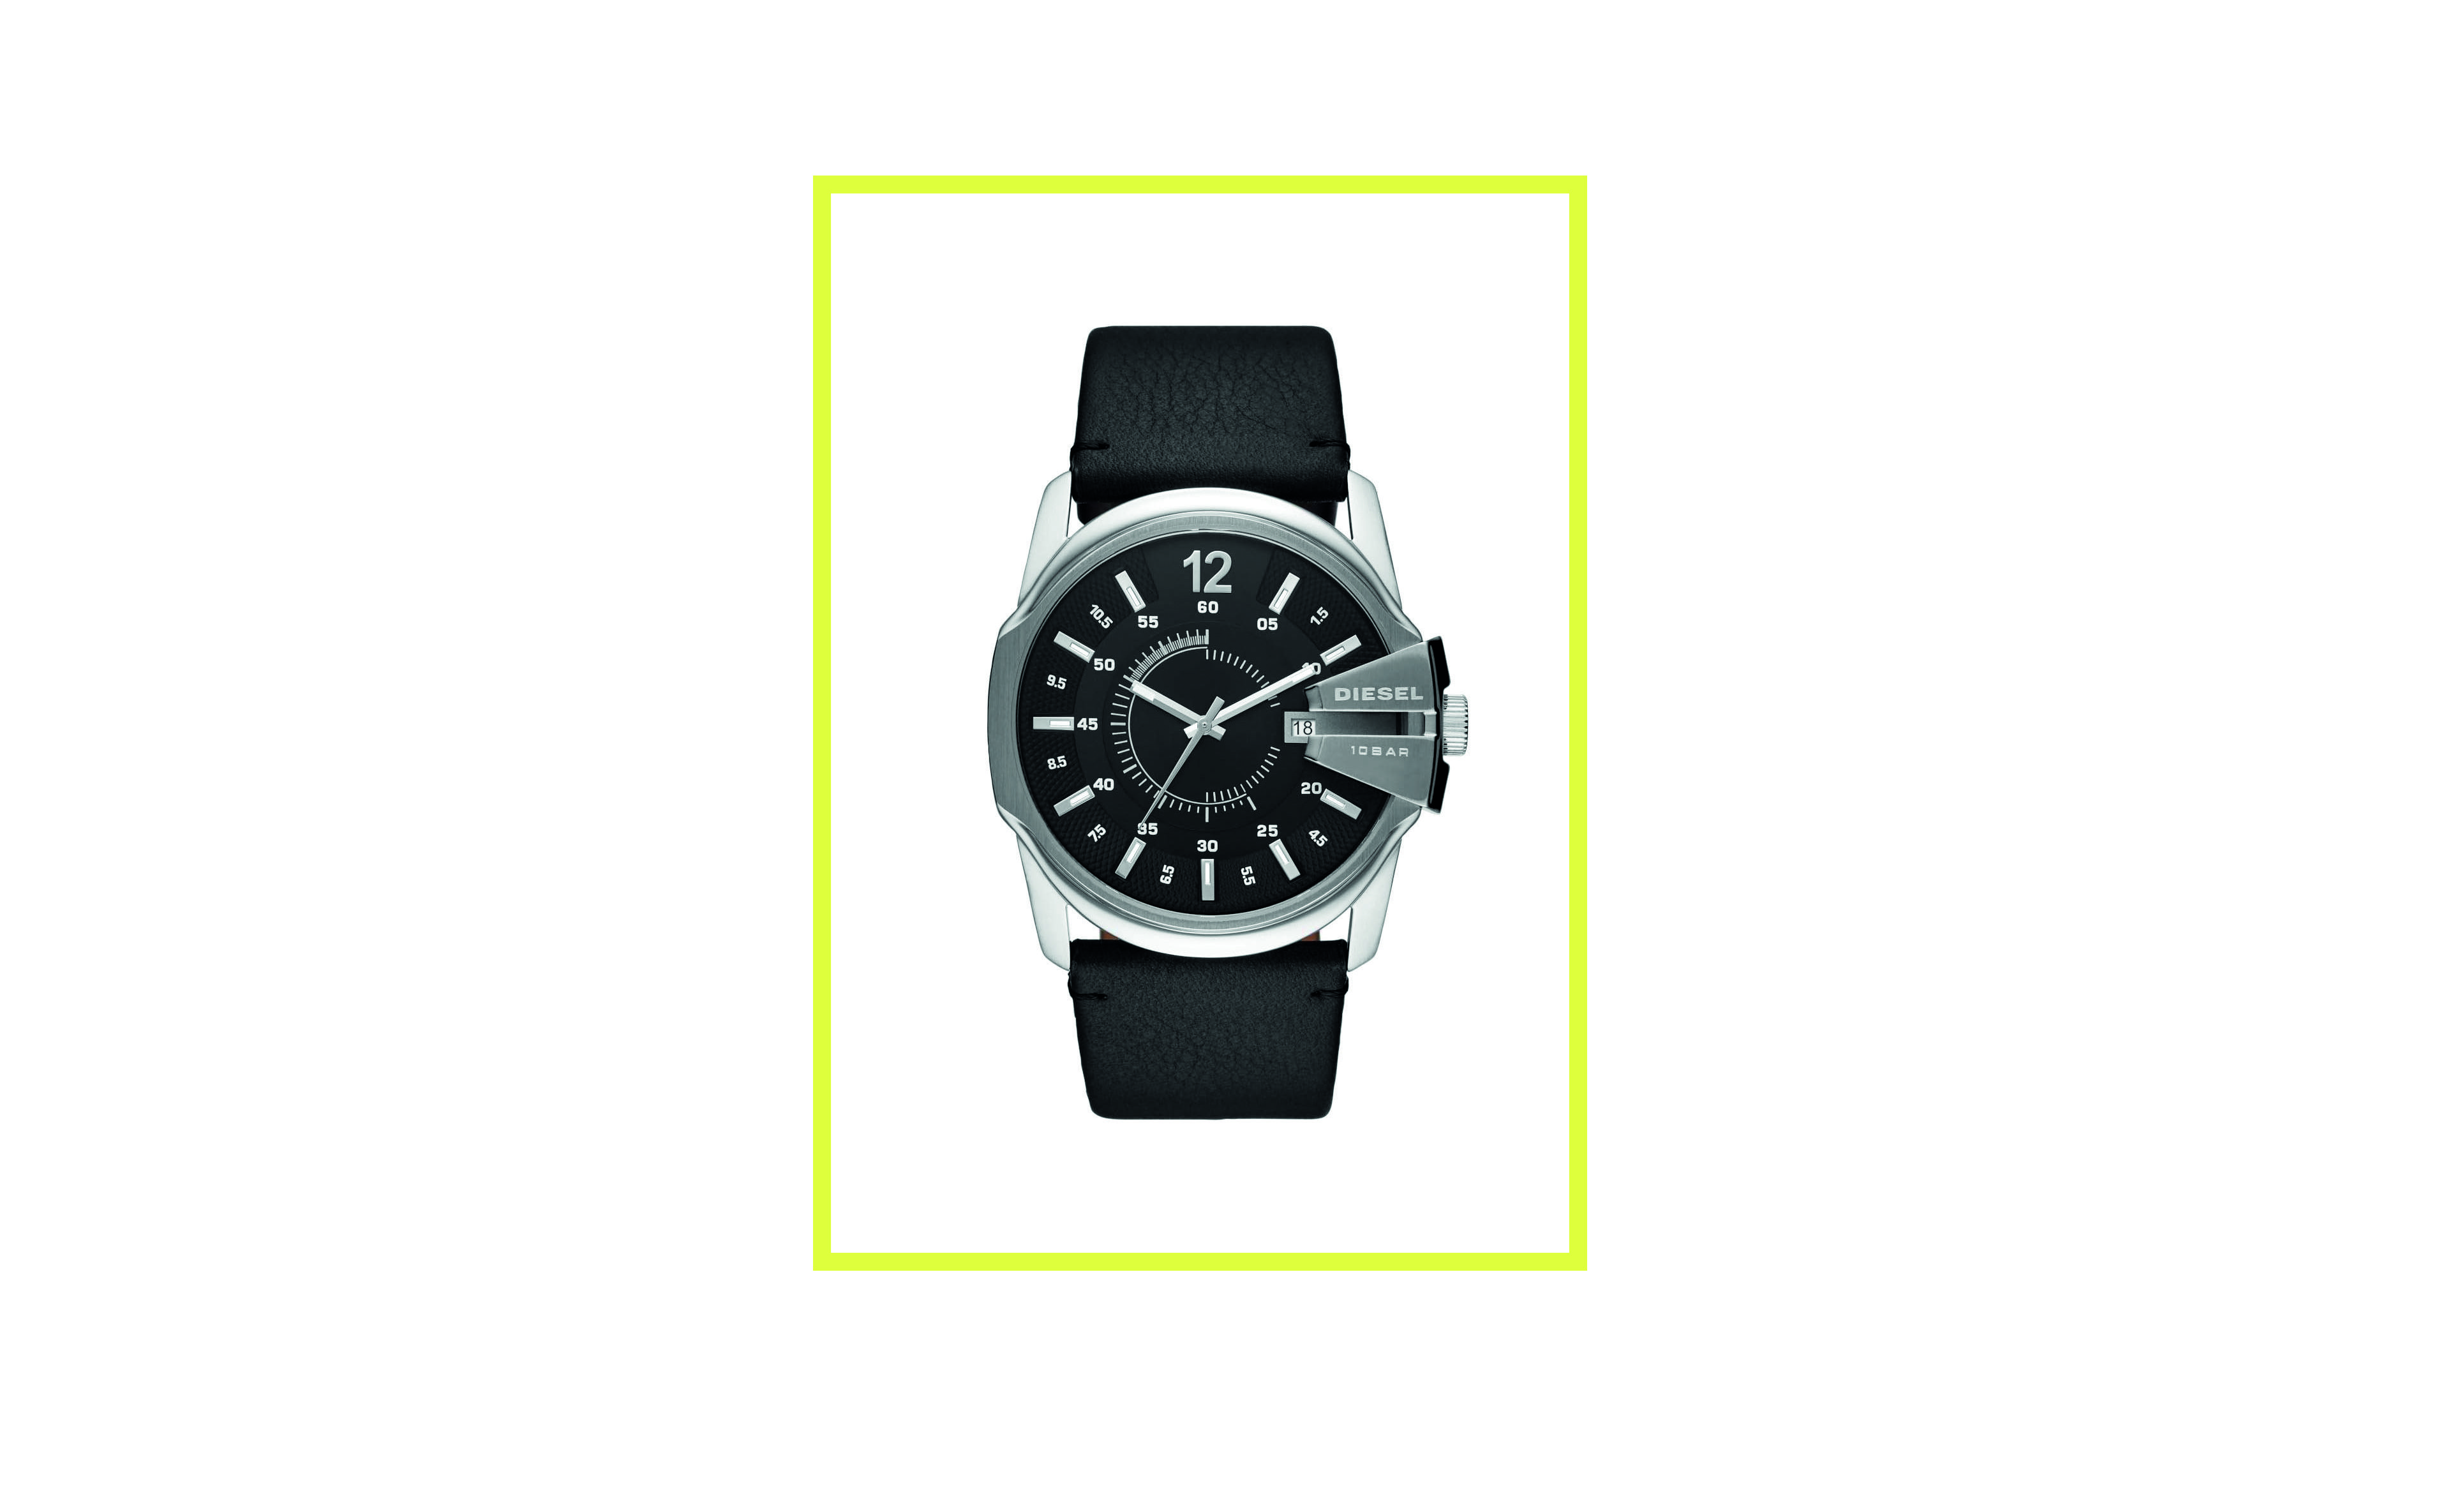 Reloj para caballero tipo casual o deportivo en tonos negro y rojo.